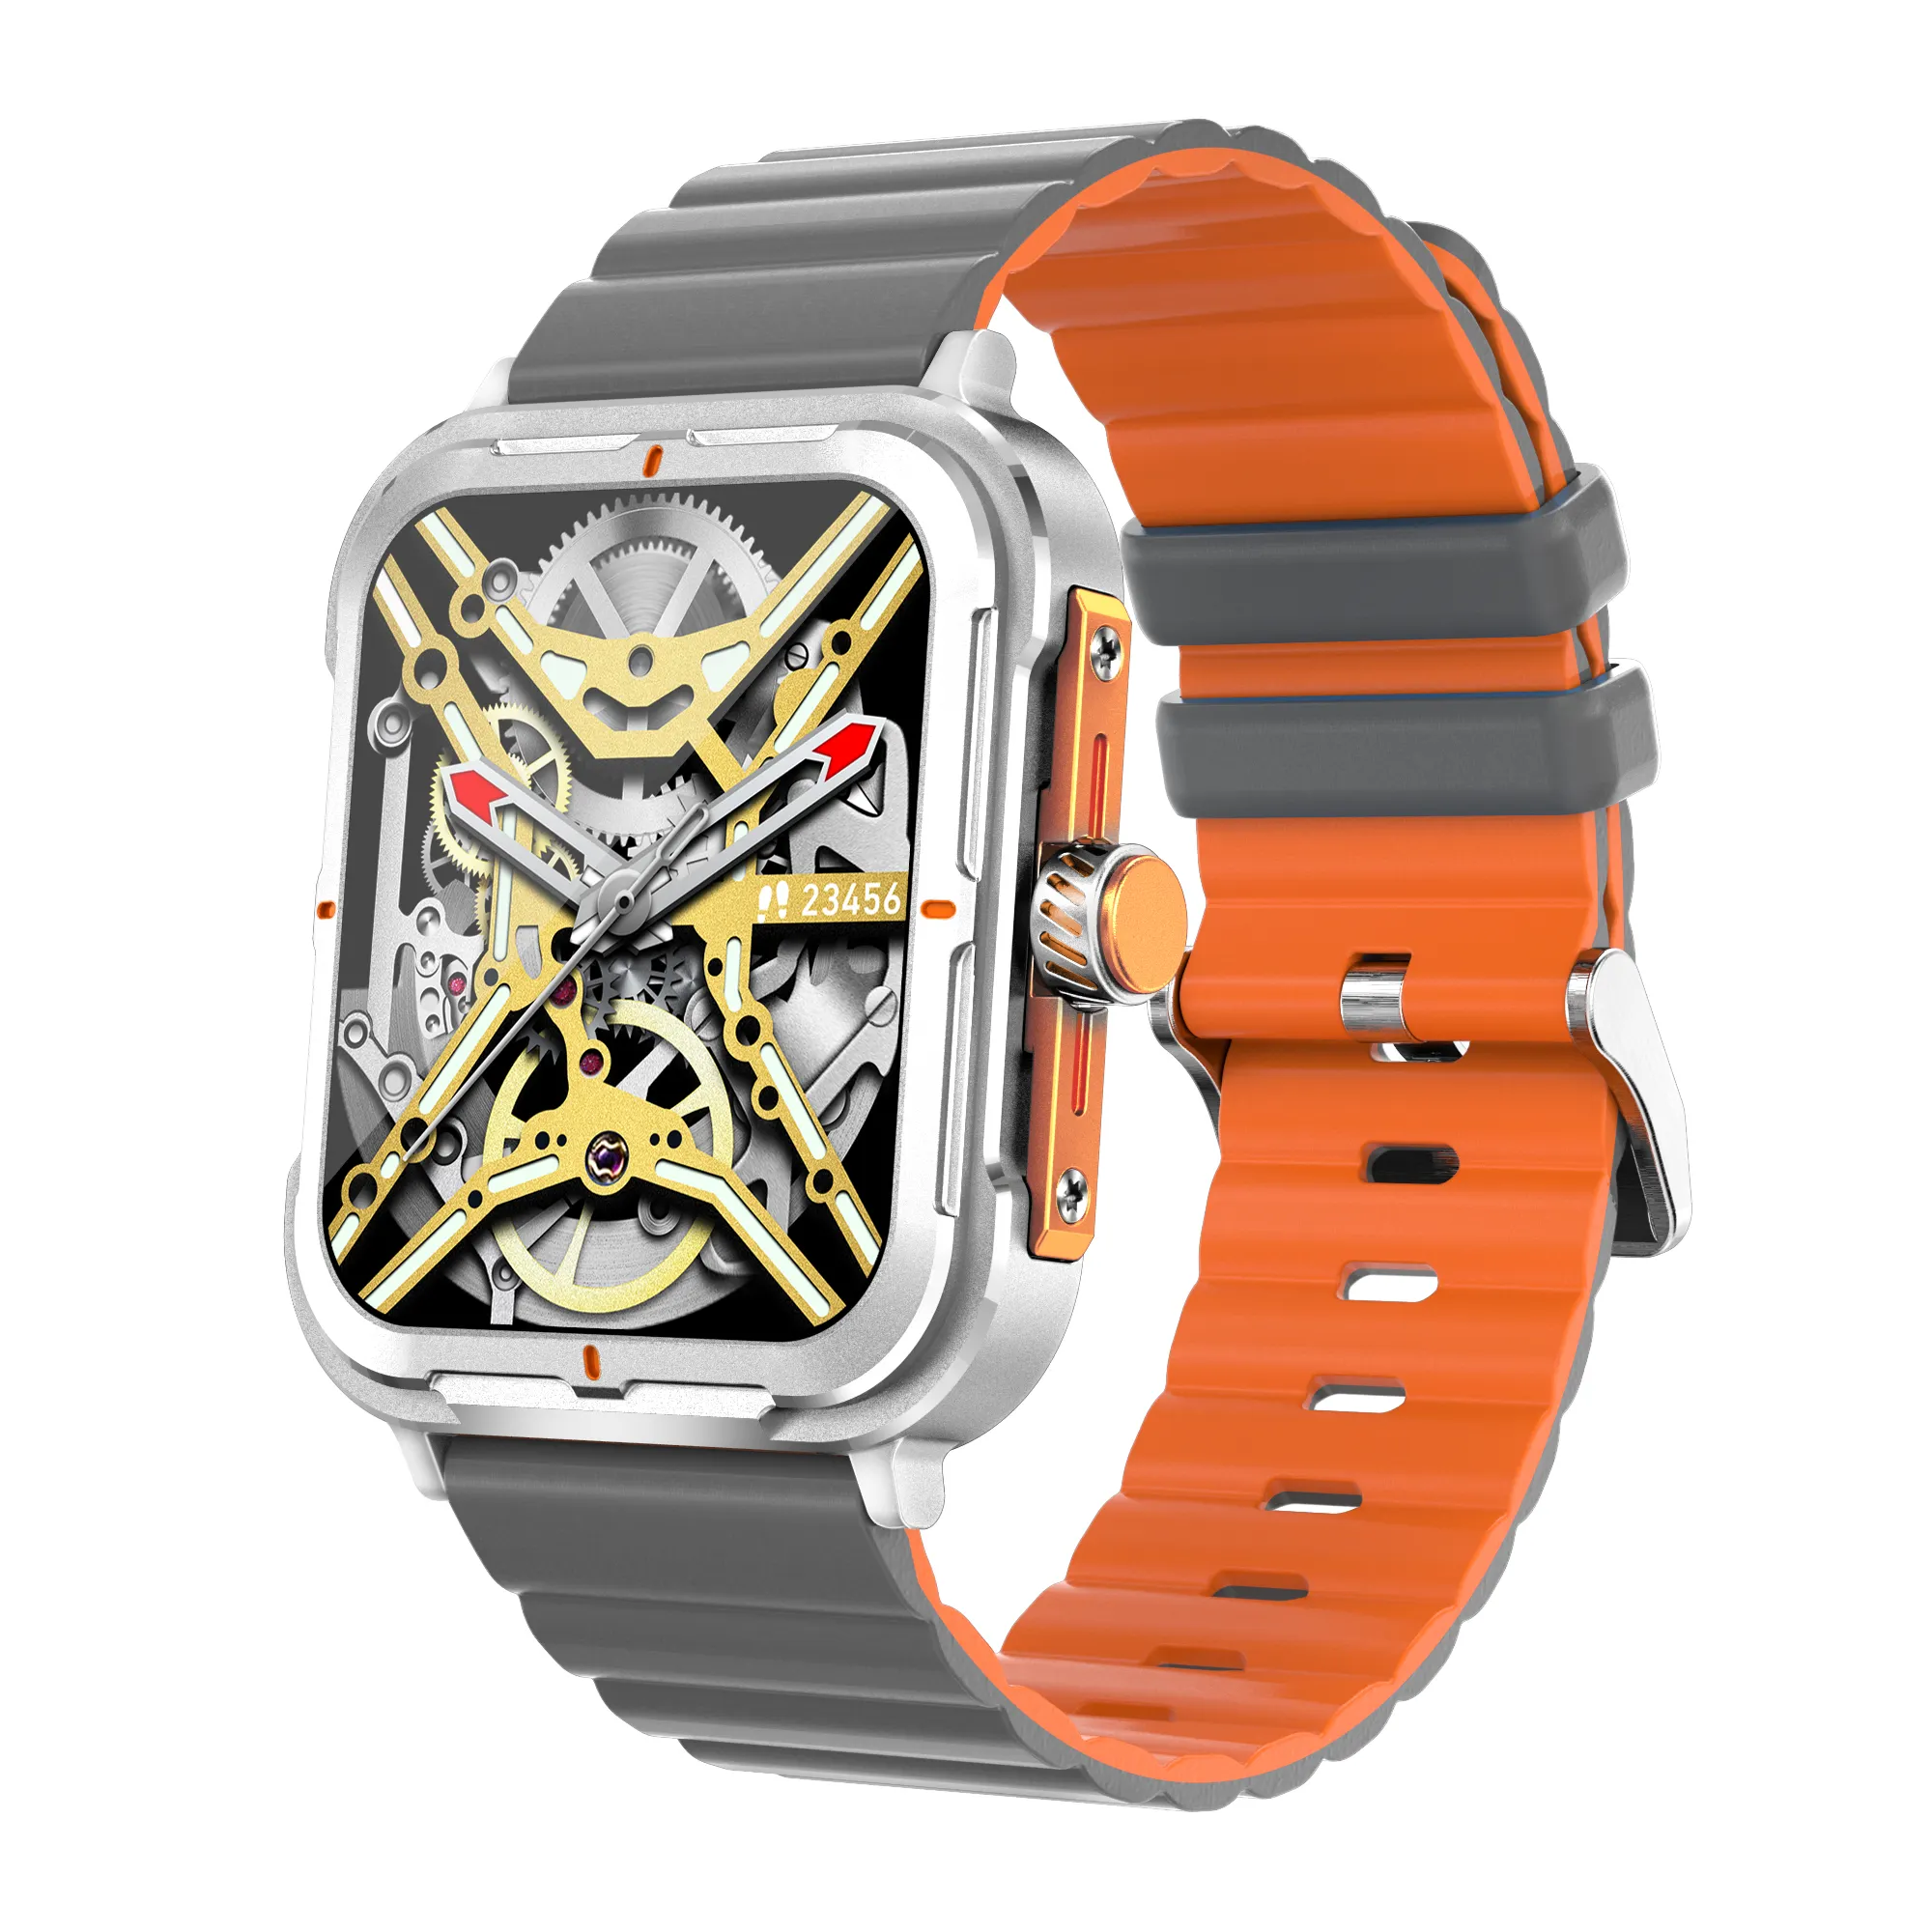 D09 smartwatch 1.83inch BT call Calories sport fitness tracker side light NFC Ai Dafit Long battery duration relogio smart watch